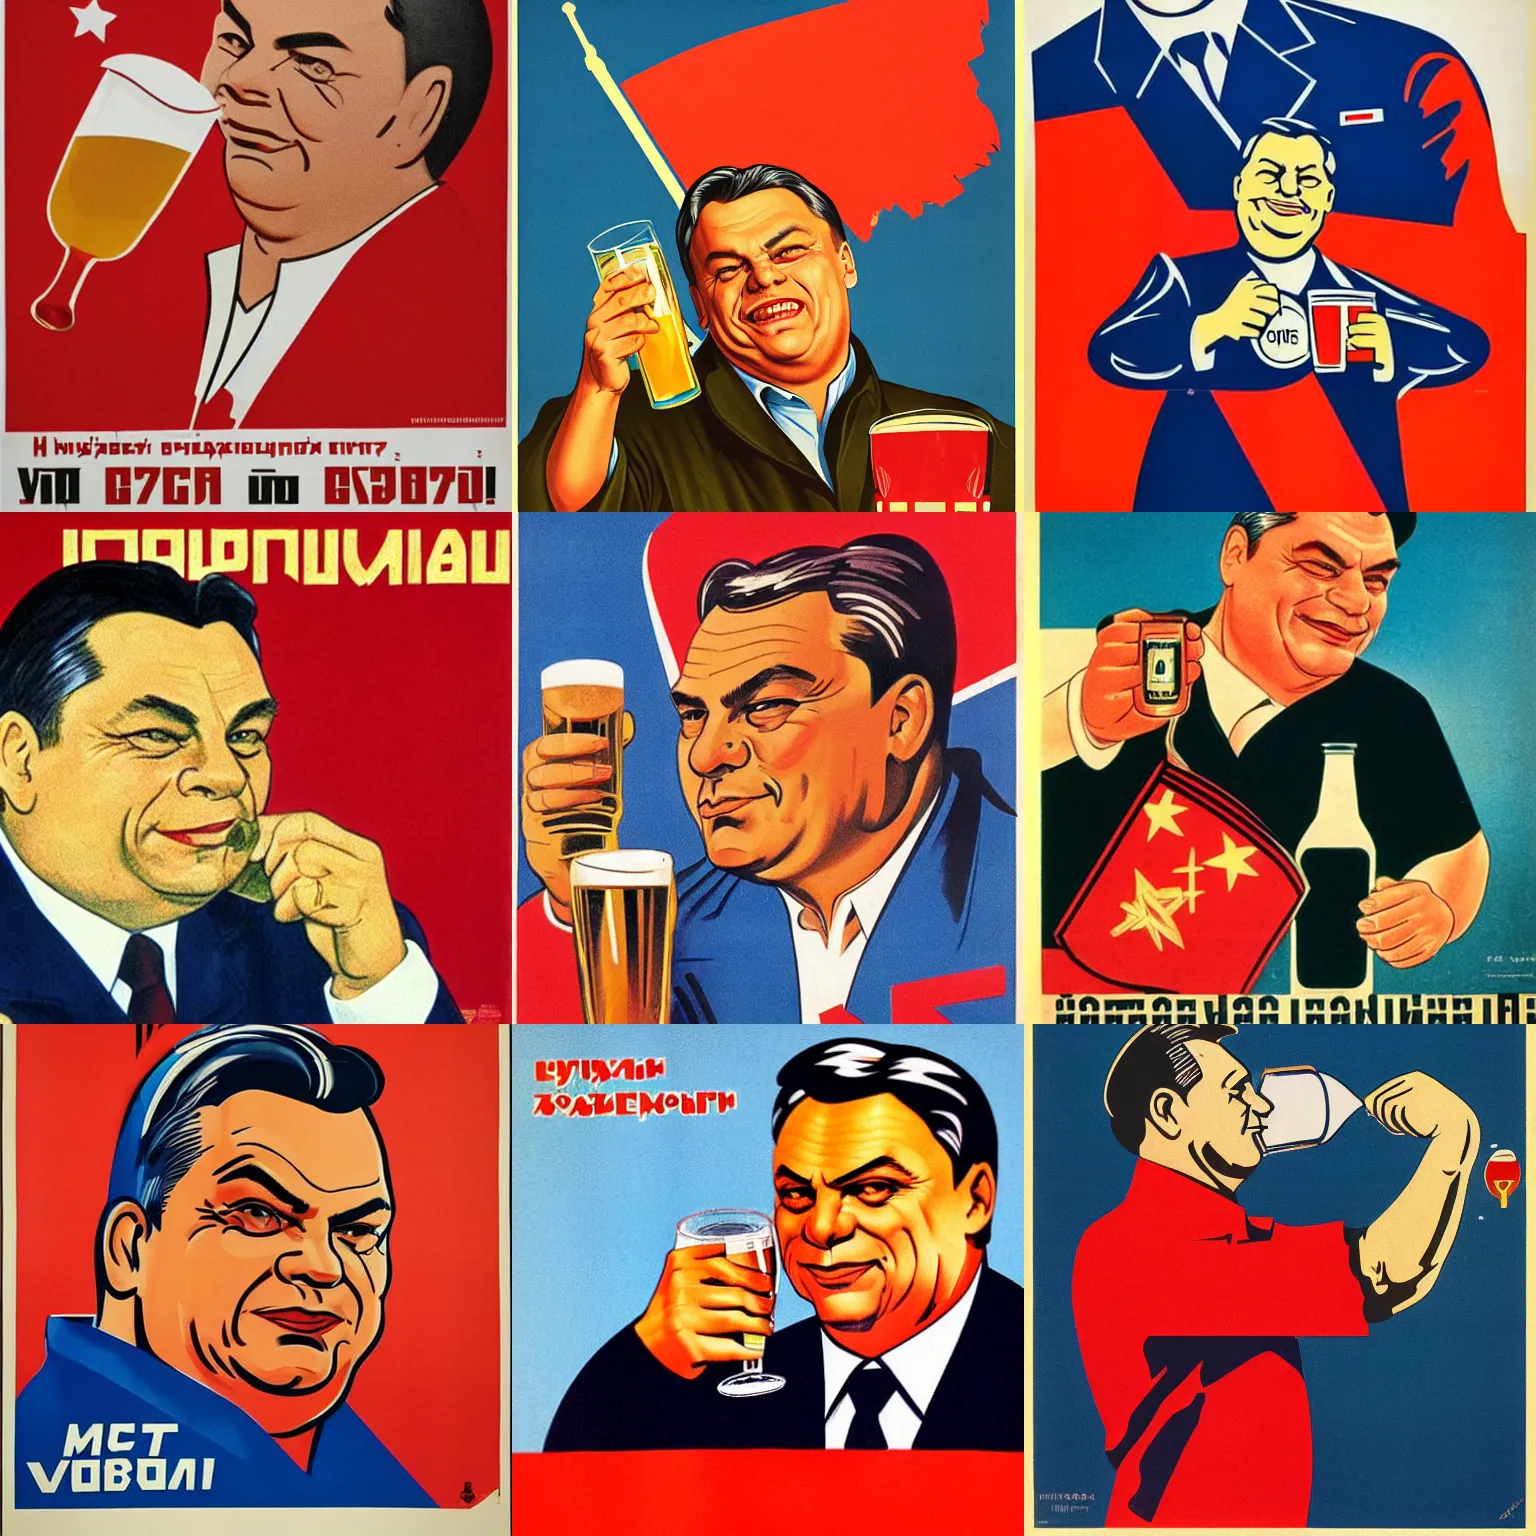 Prompt: soviet propaganda poster of communist viktor orban winking with beer